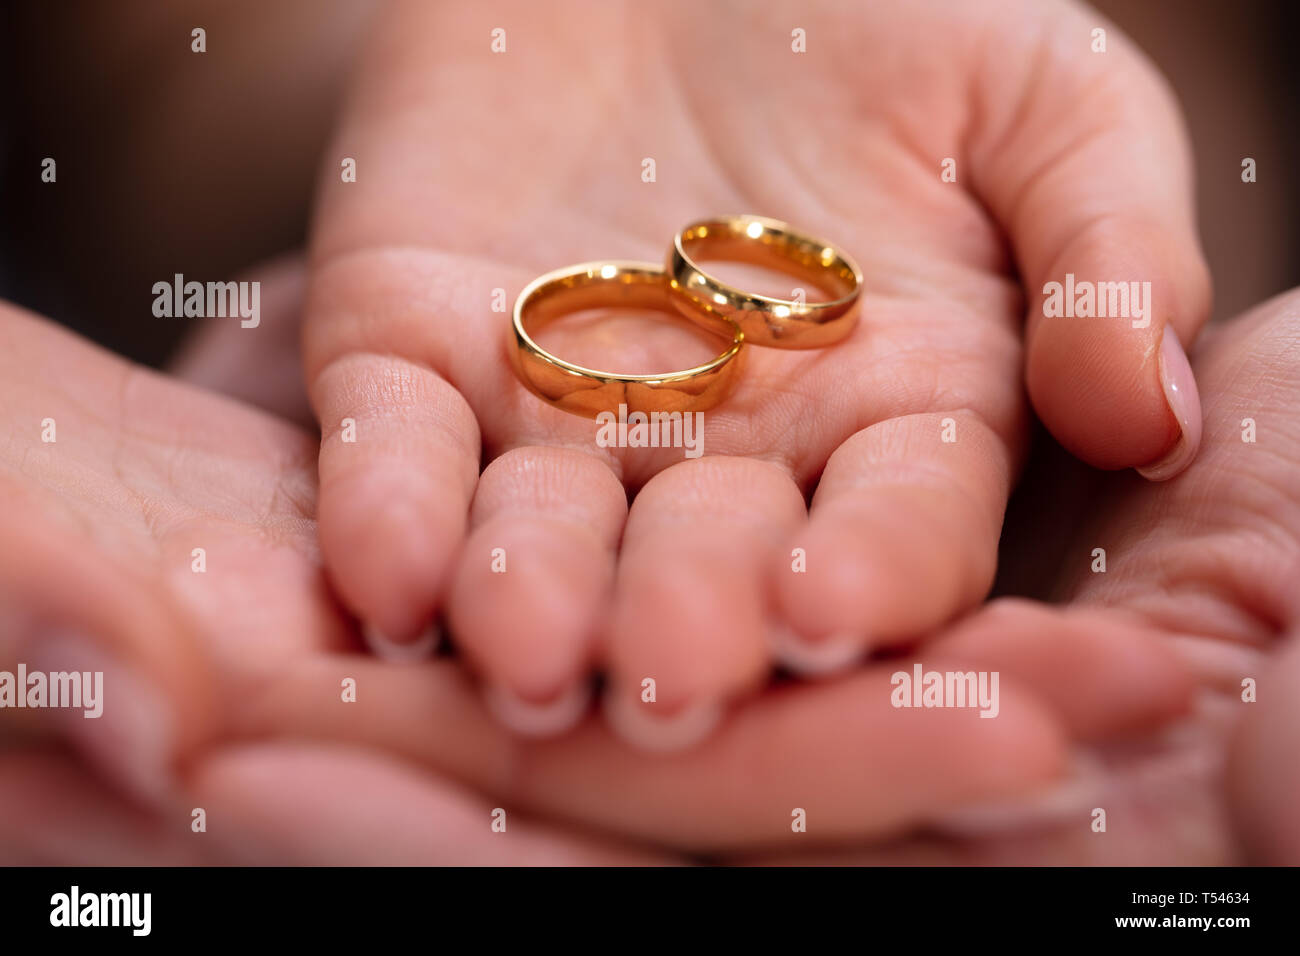 La mano del hombre y de la mujer con un par de anillos de compromiso de oro Fotografía de stock Alamy